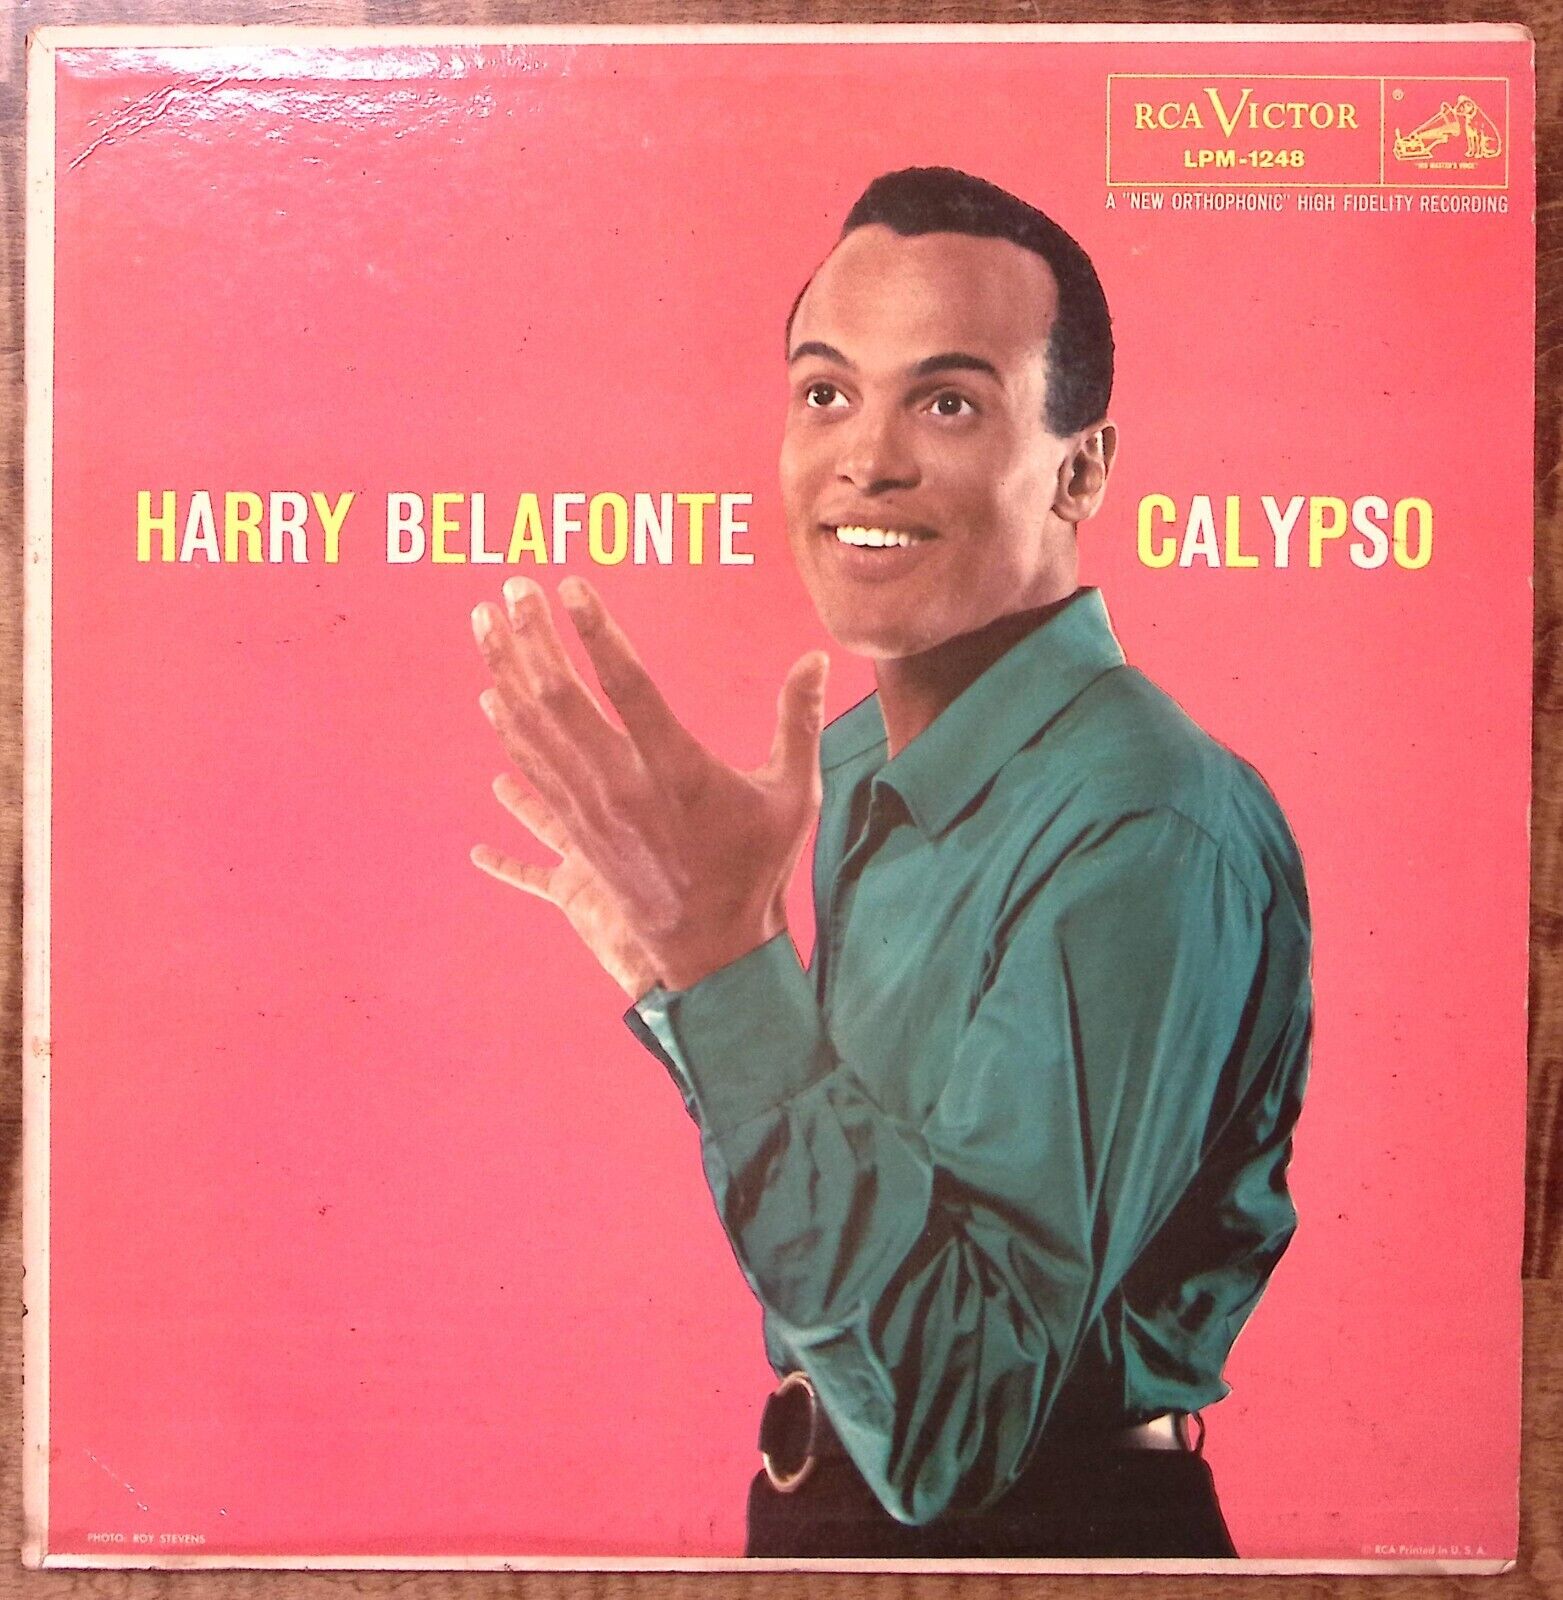 HARRY BELAFONTE CALYPSO RCA VICTOR RECORDS VINYL 197-58